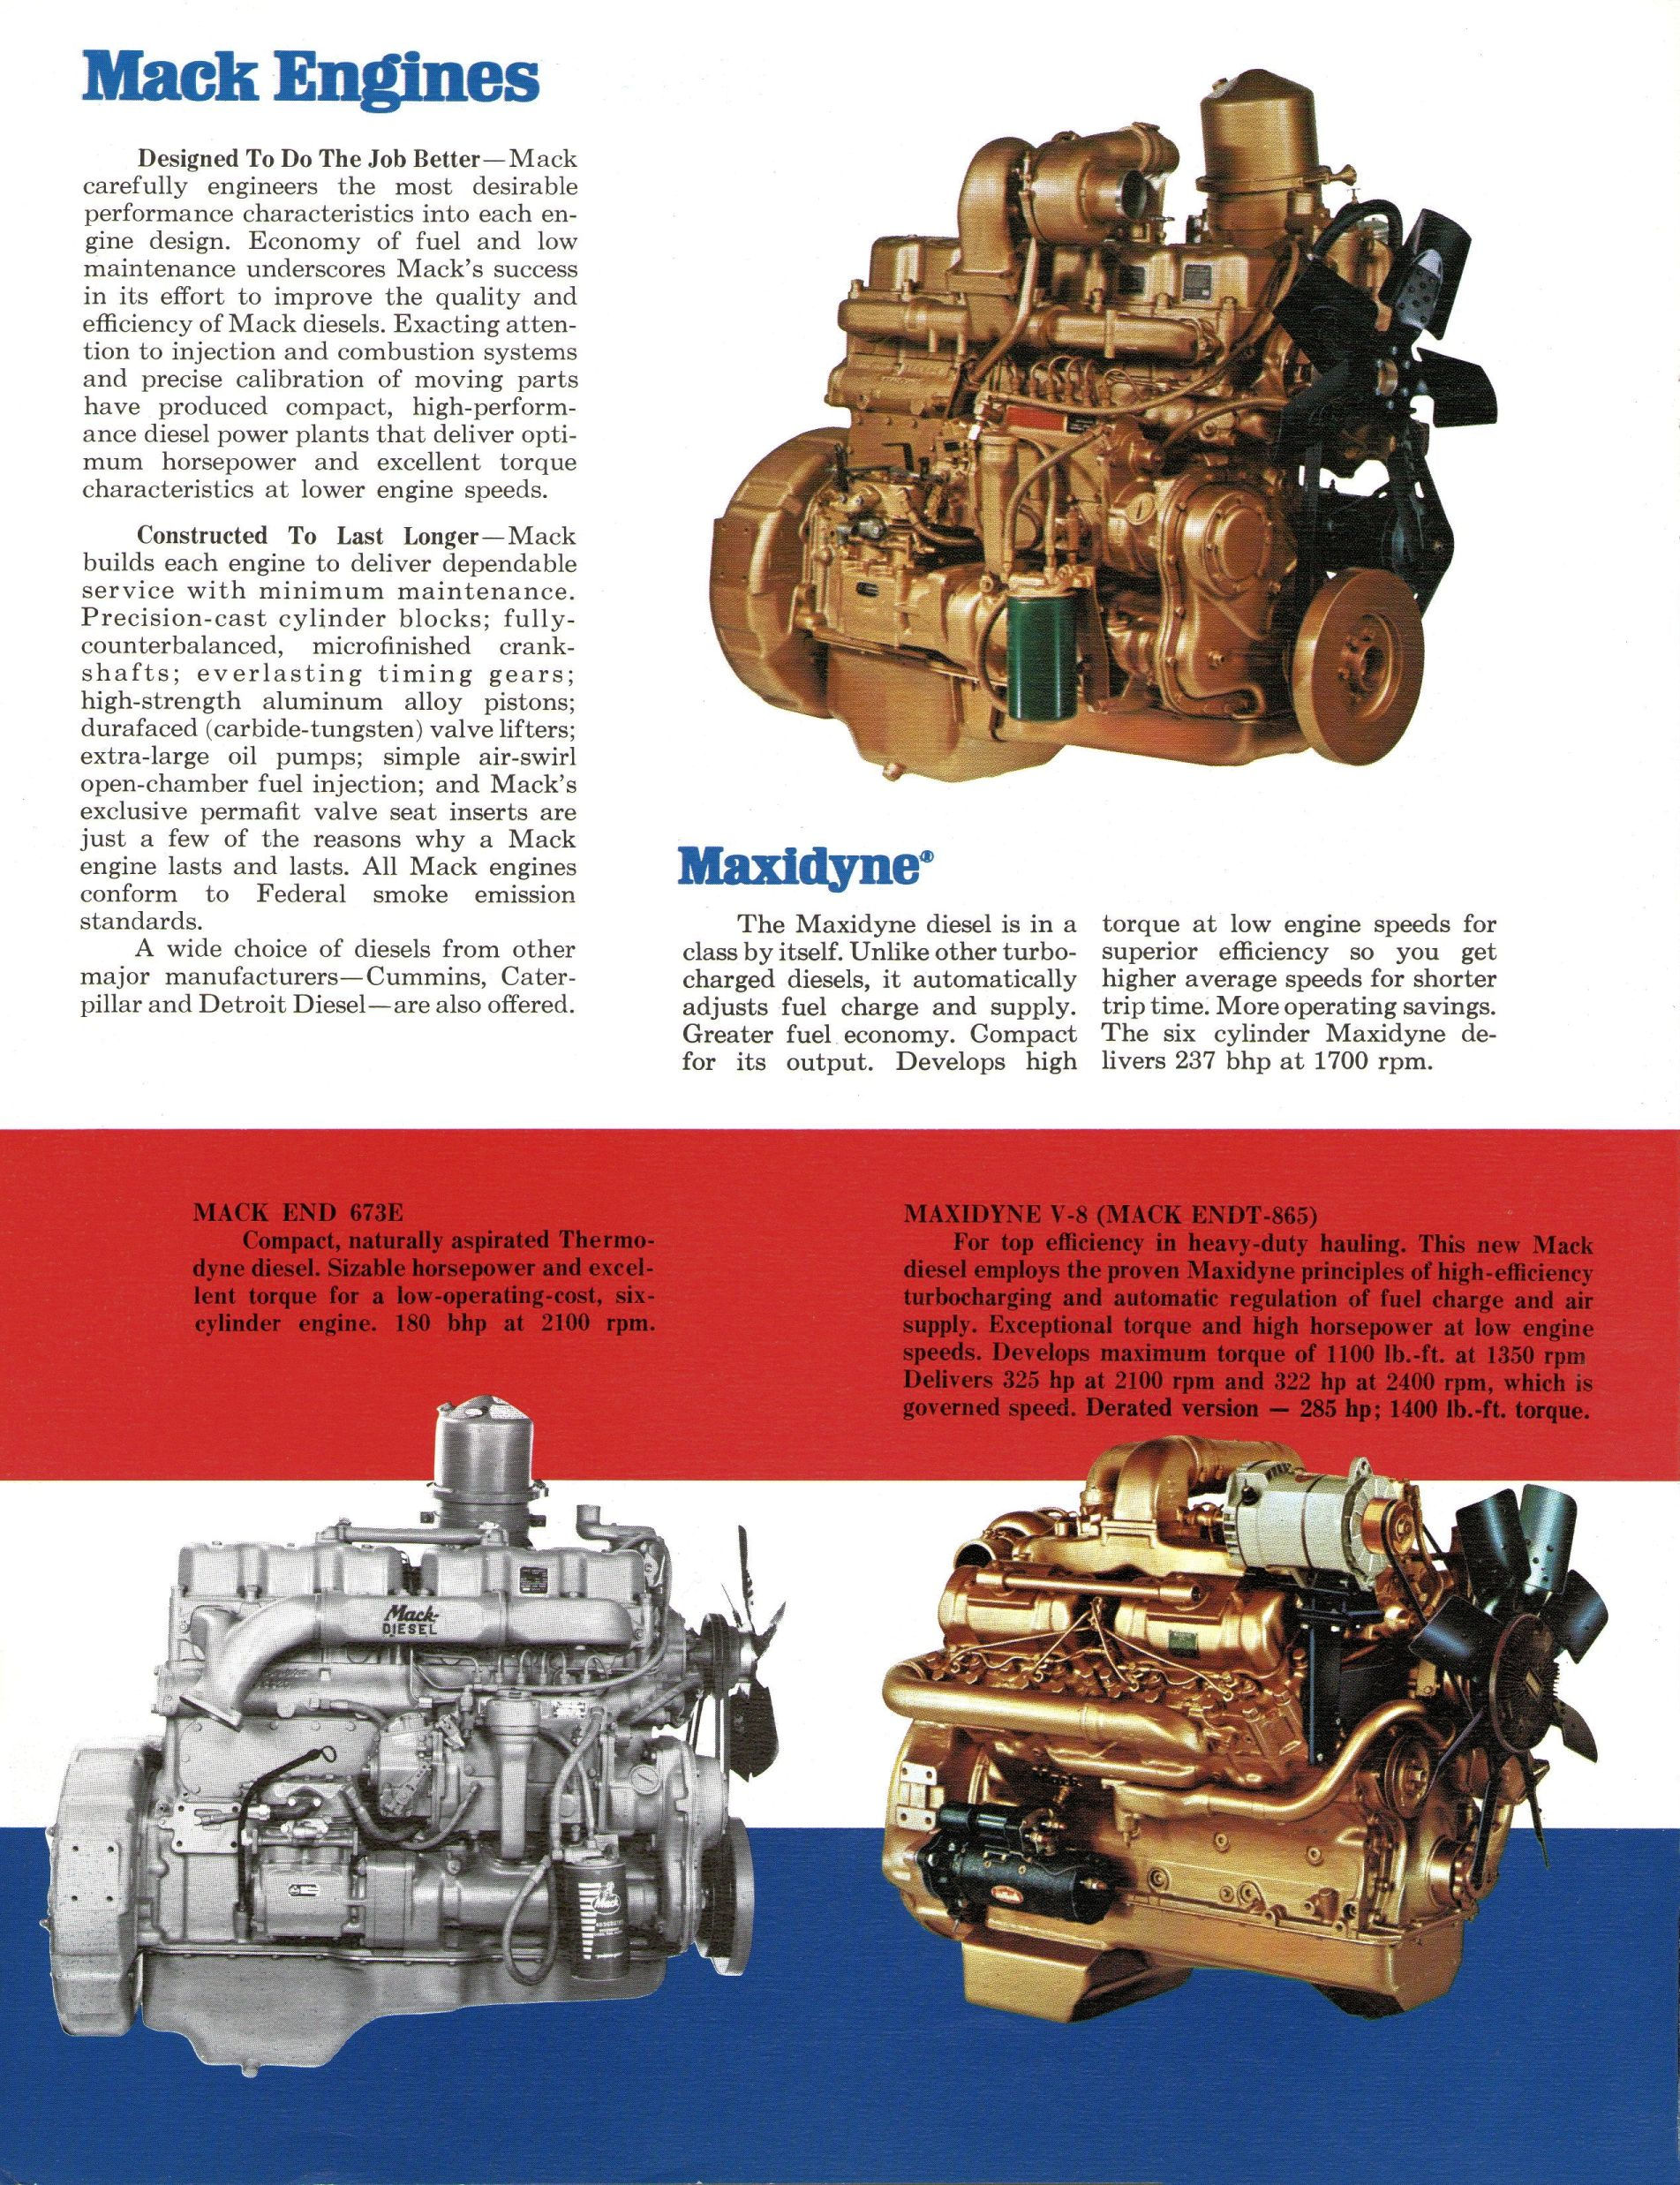 La gran diferencia entre un Mack y el resto de camiones norteamericanos fue que Mack fabricaba sus propios motores de gran fiabilidad.